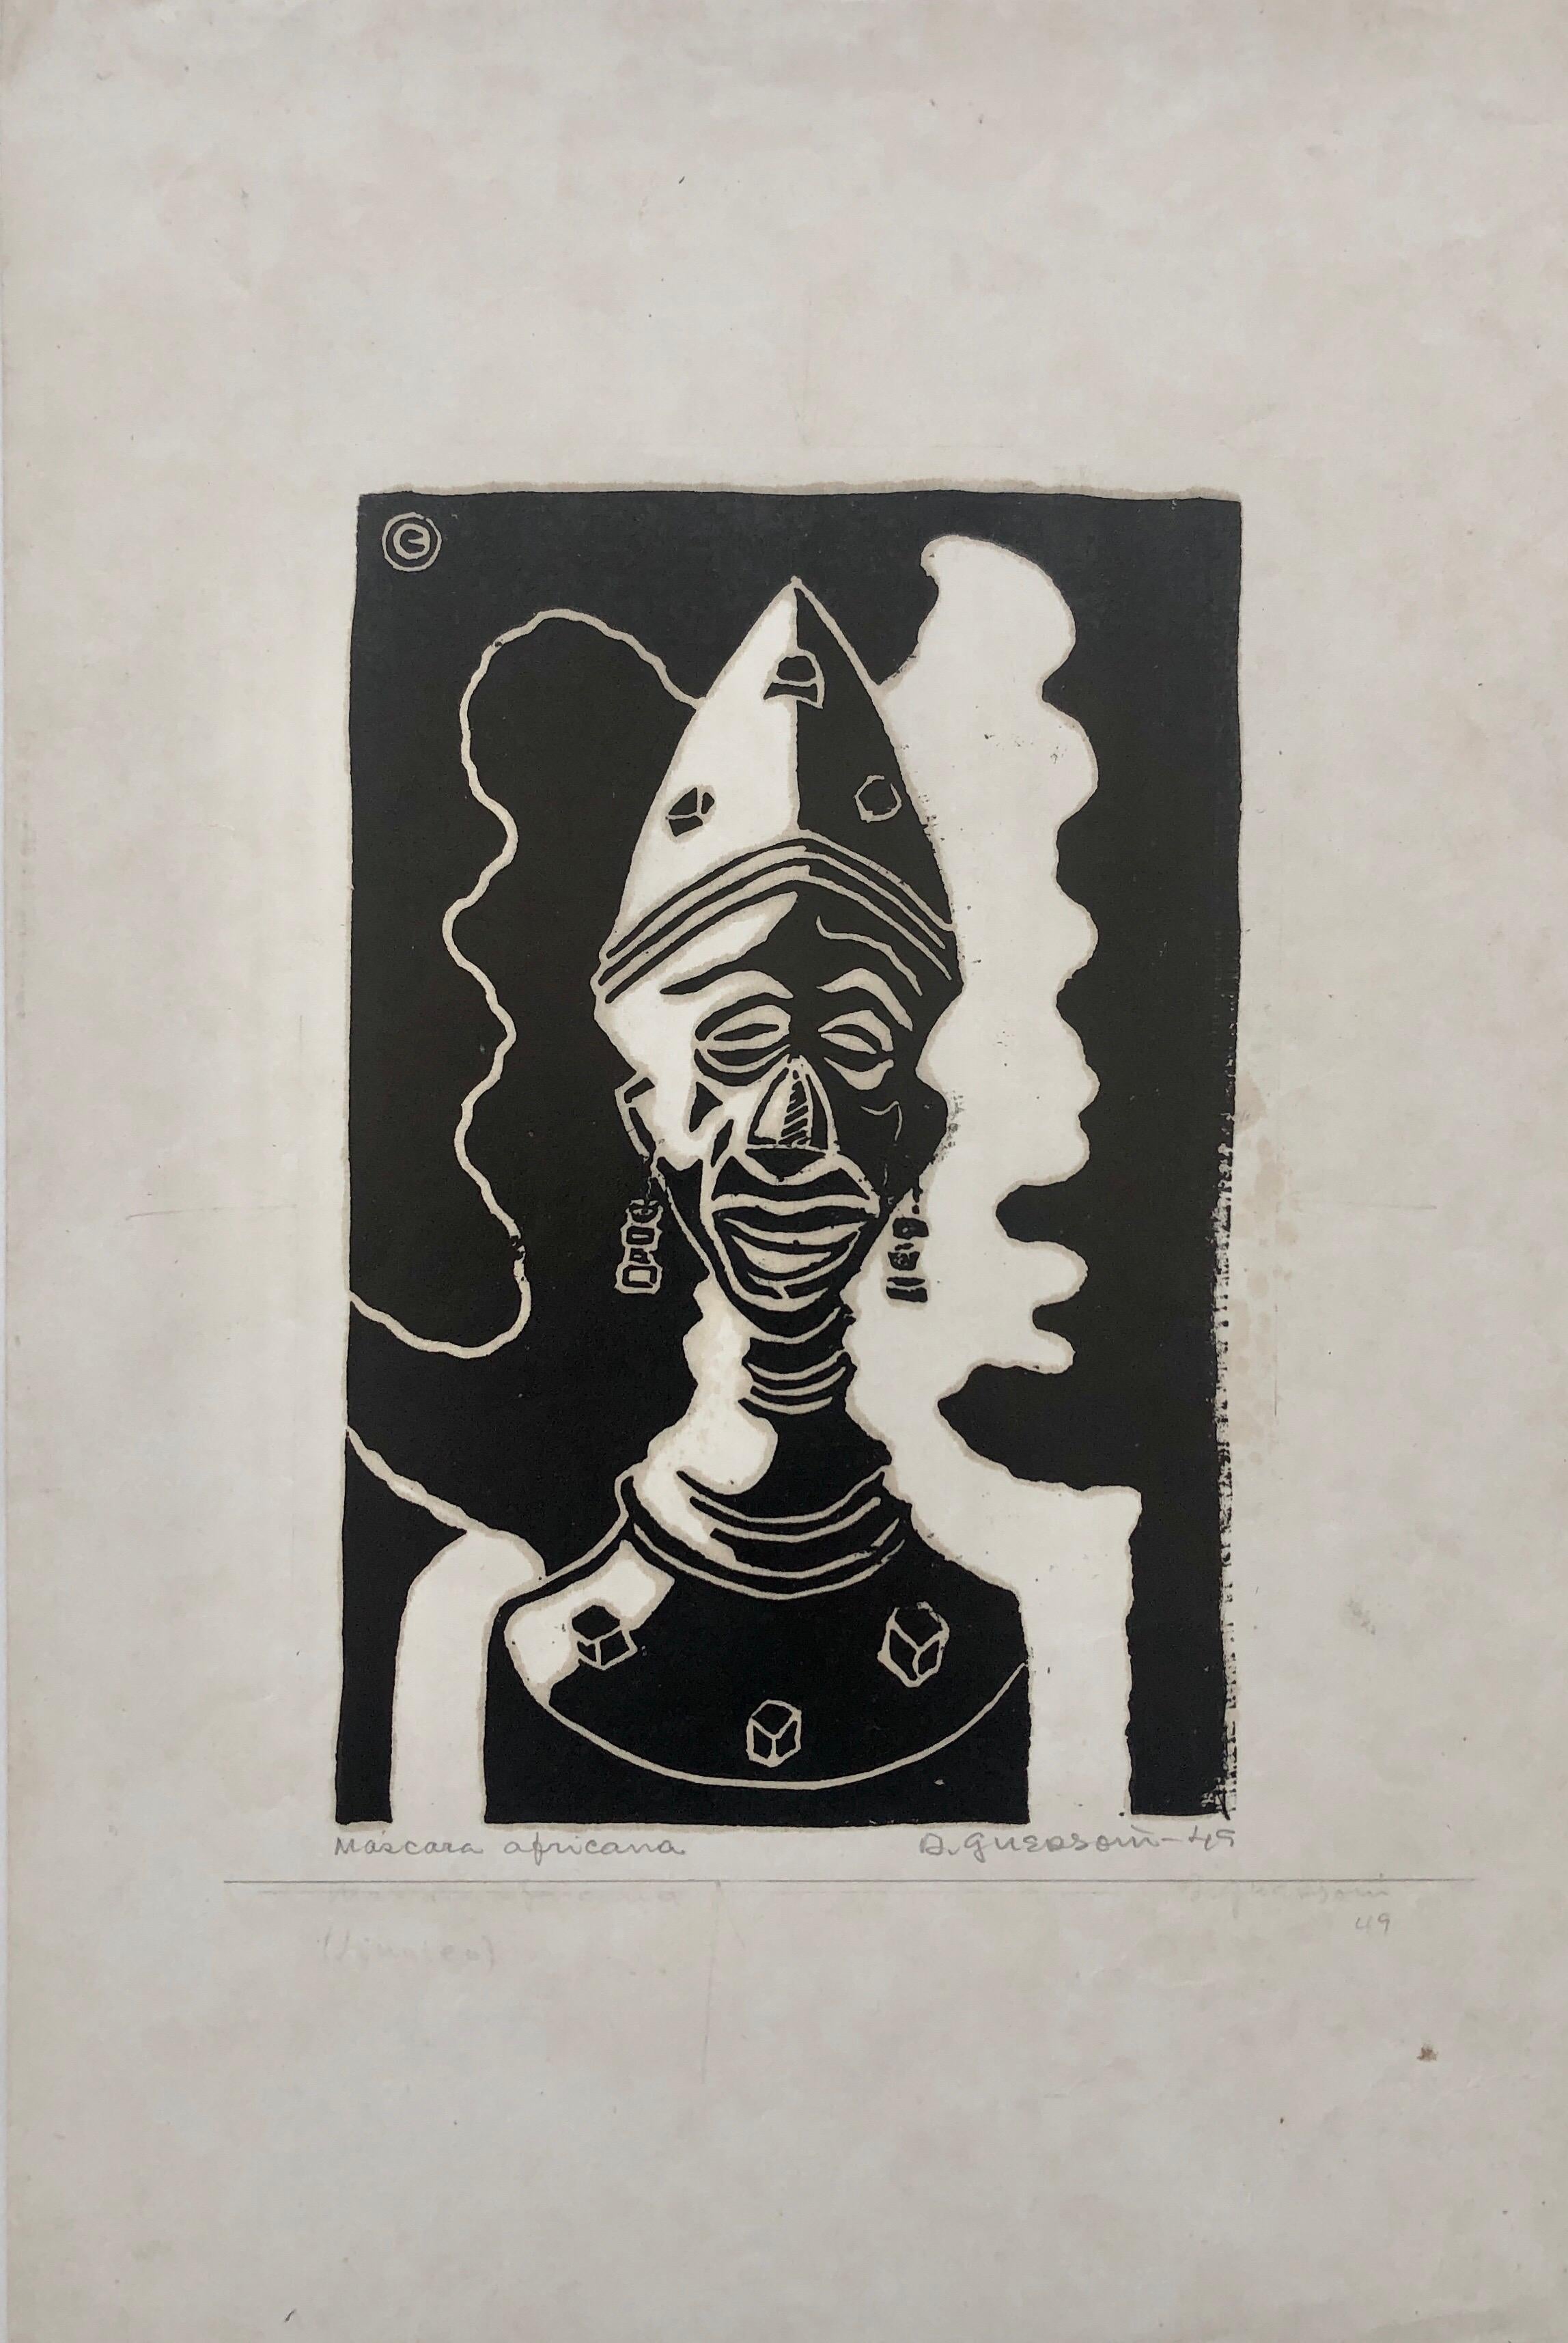 1945 Brasilianischer Meister, Art Deco Clown Serigraphie Holzschnitt  – Print von Odetto Guersoni